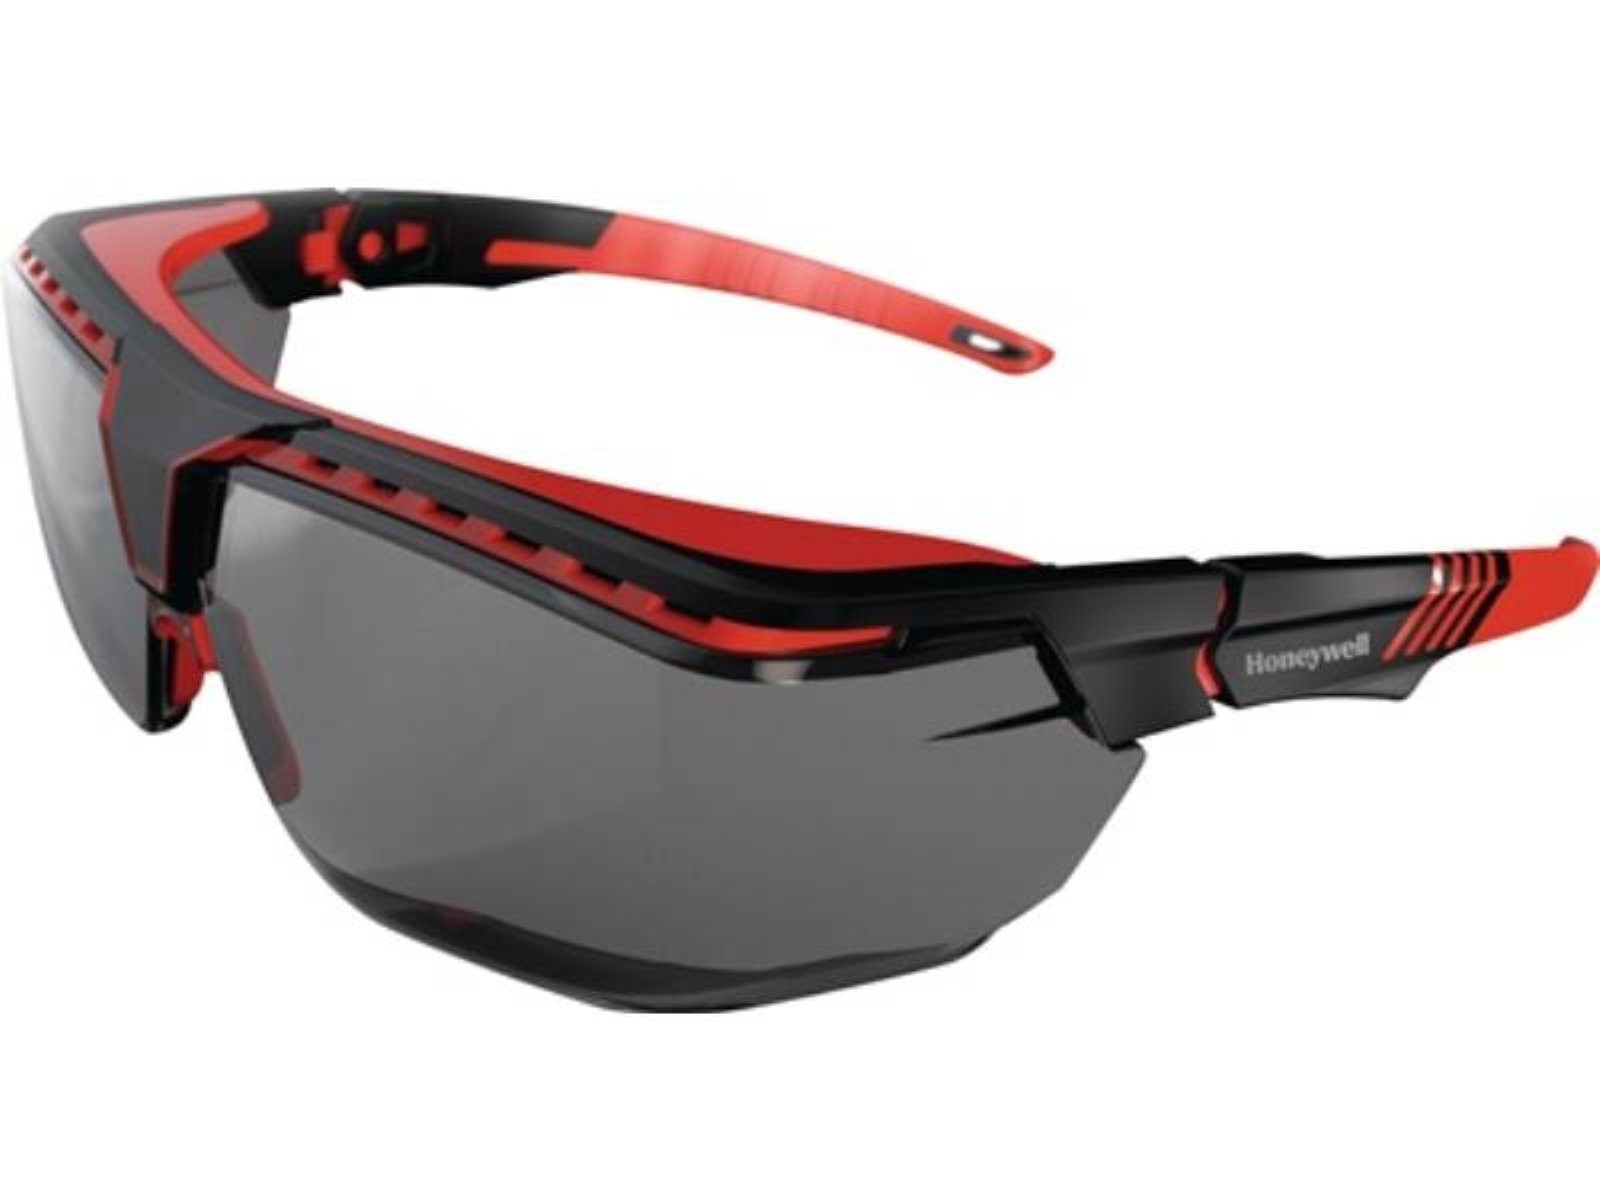 PC Honeywell grau HONEYWELL Bügel schwarz/rot,Scheibe Avatar OTG Arbeitsschutzbrille Schutzbrille d